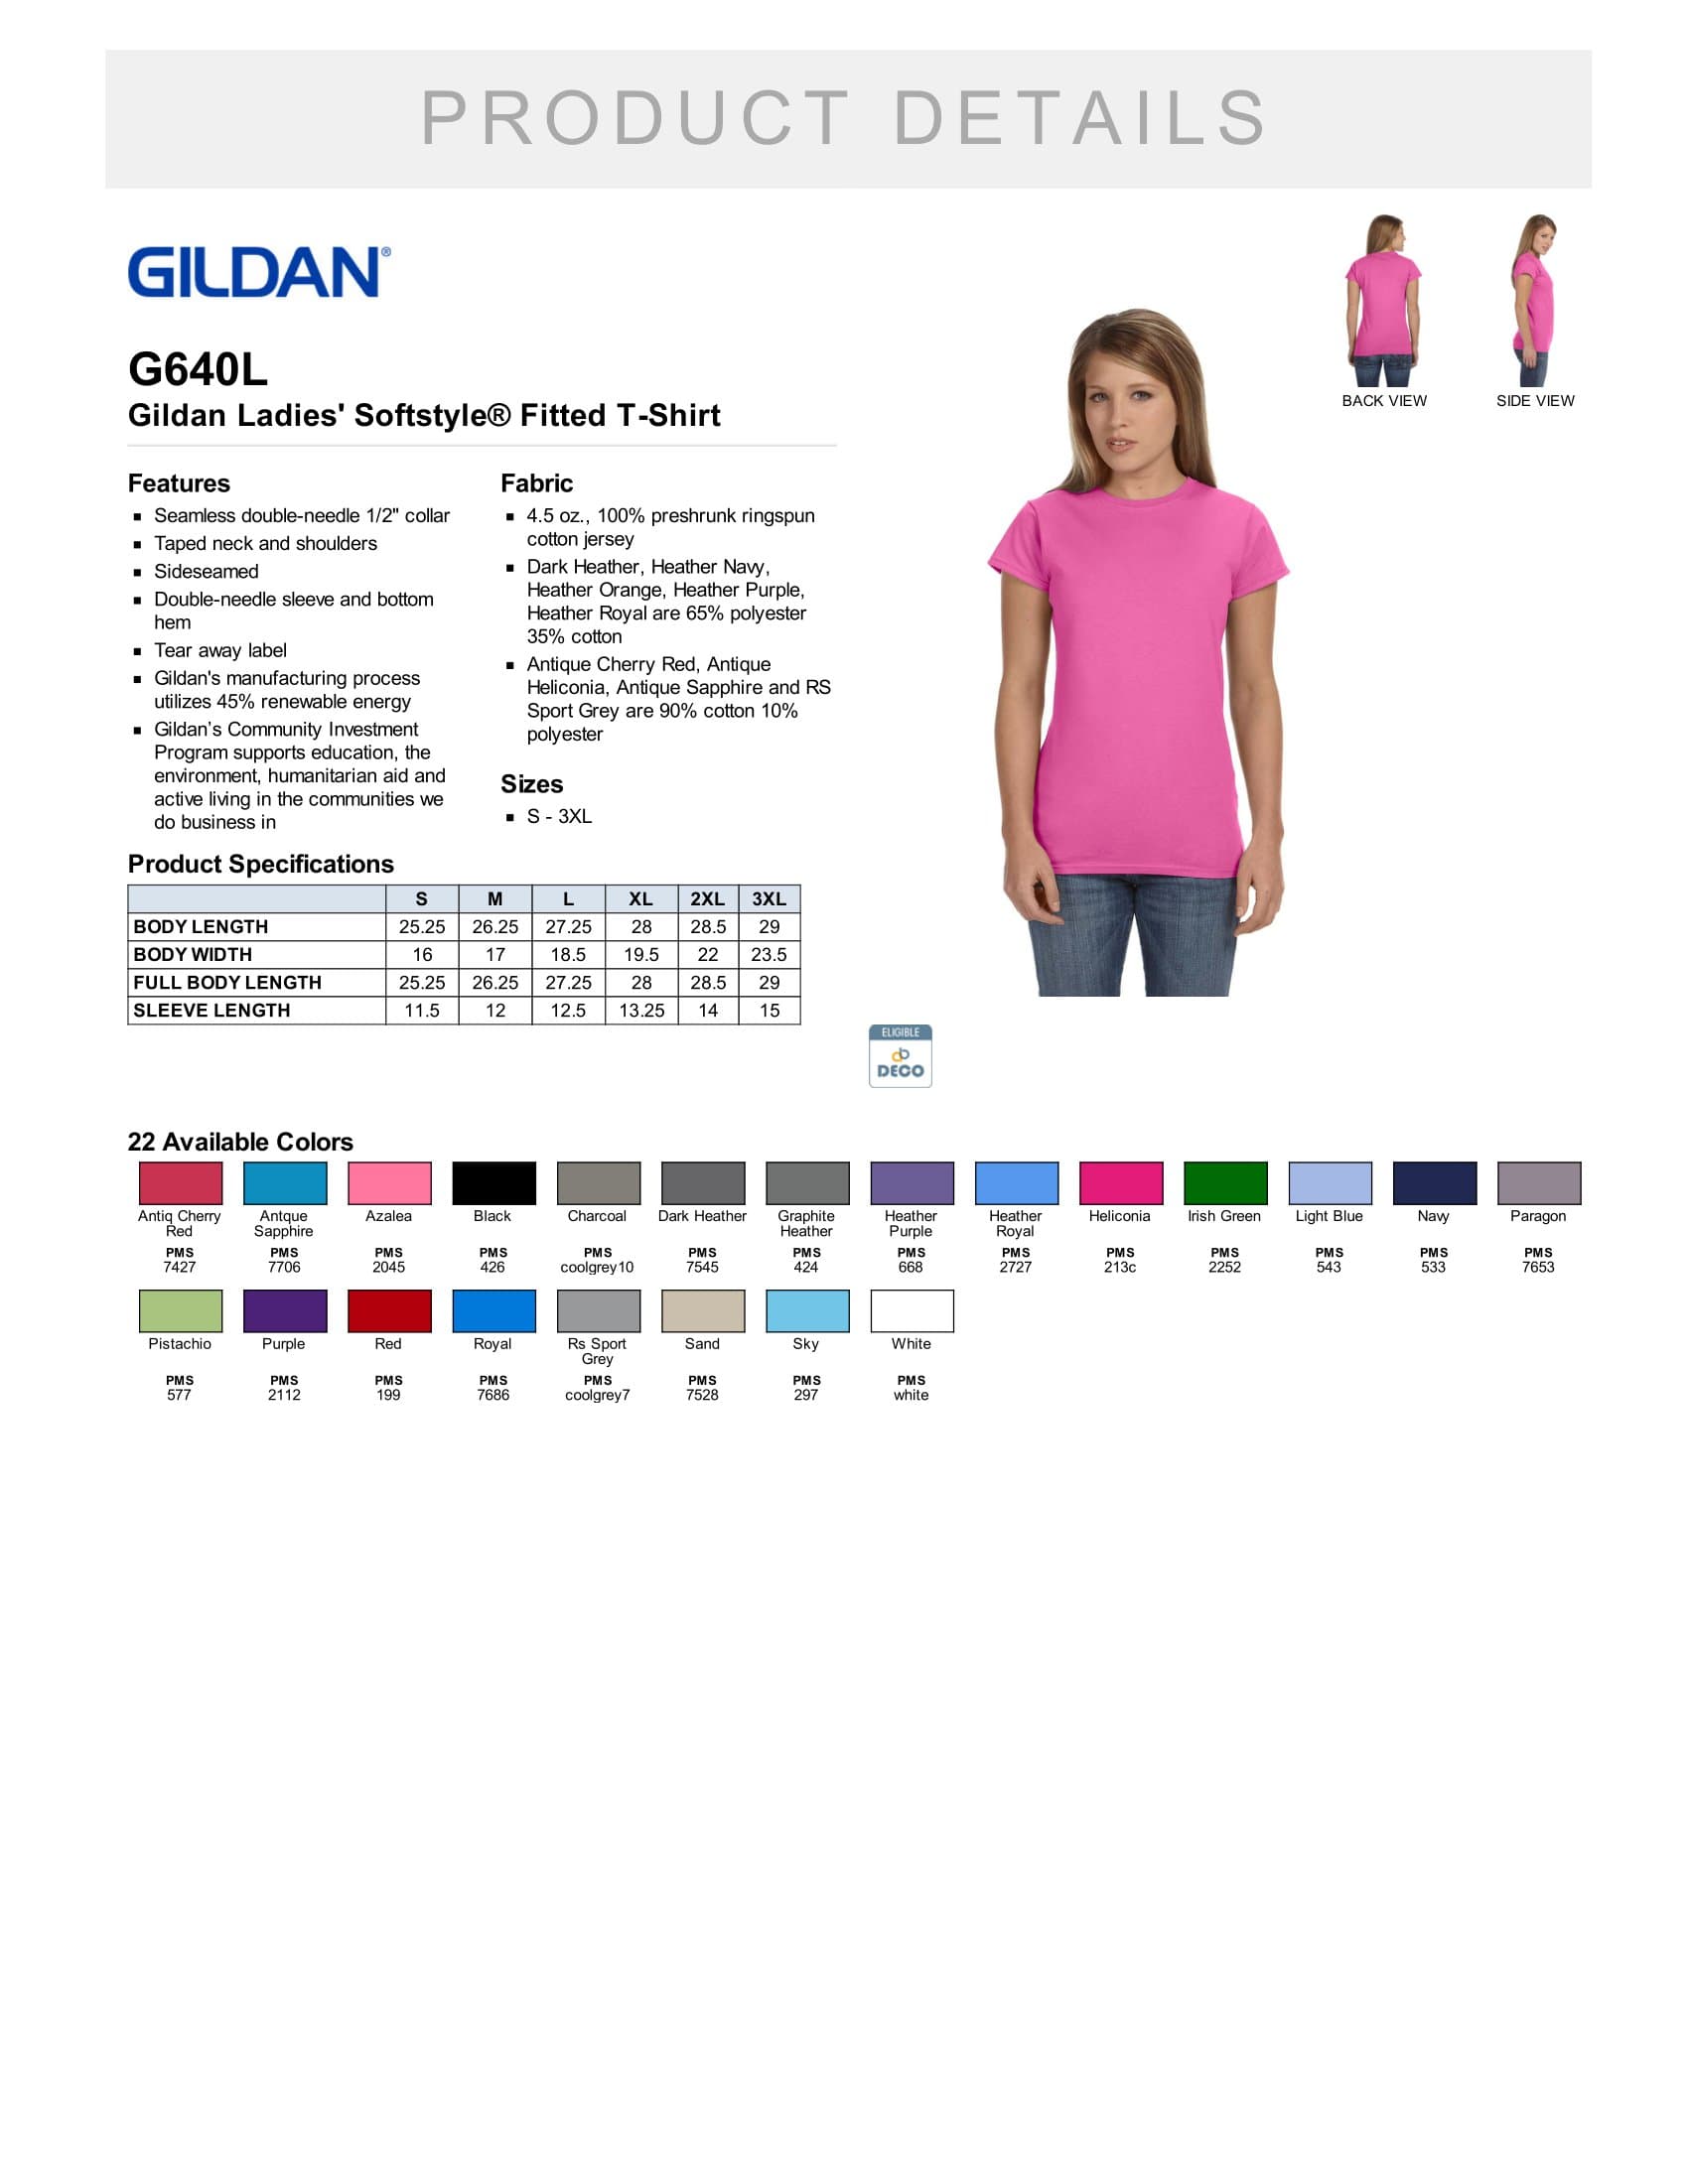 Gildan G640L 